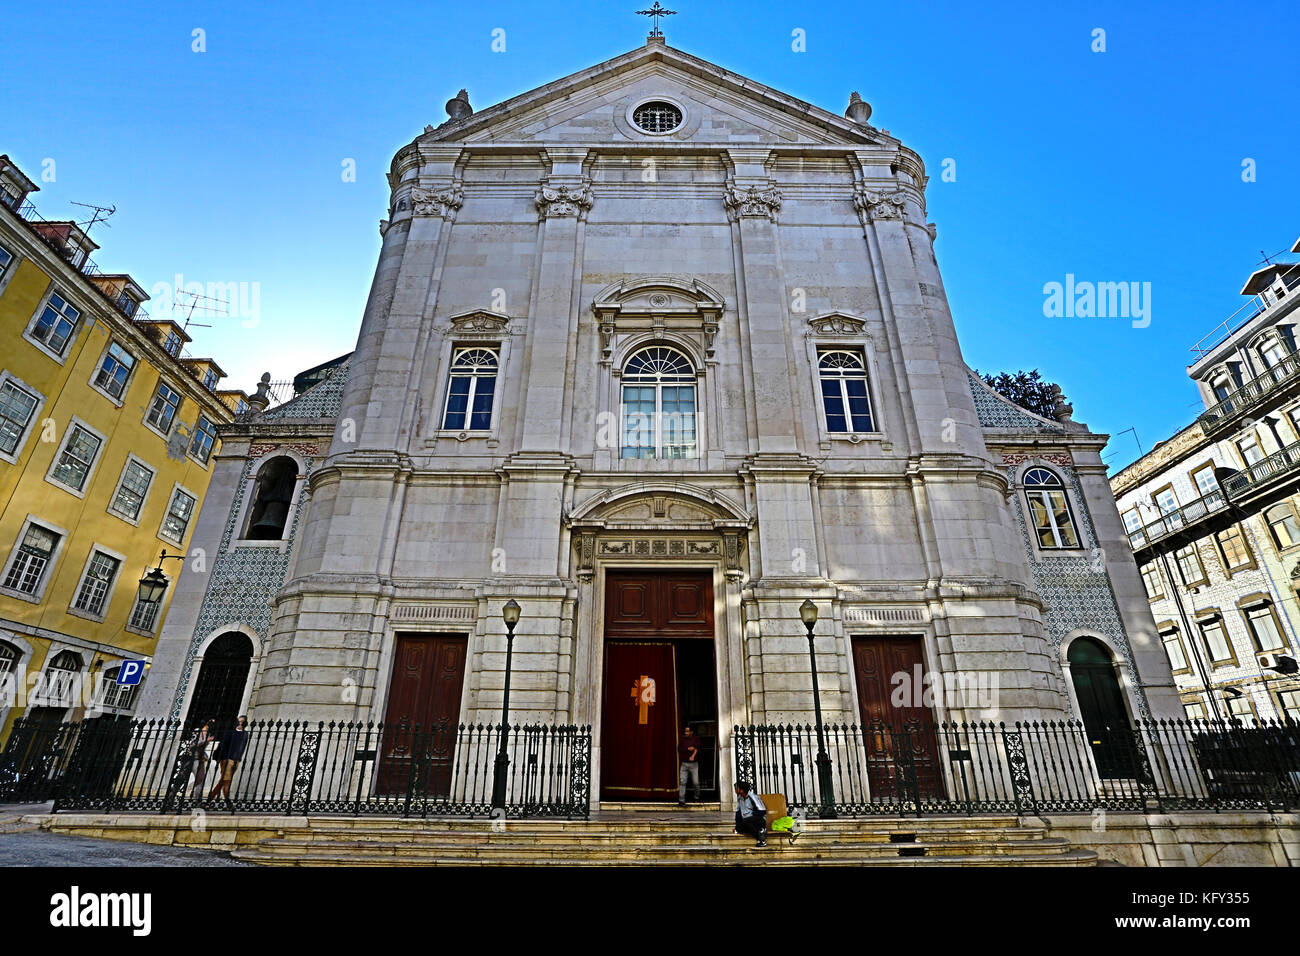 Chiesa di San Nicola (sao nicolau), datata dai primi tredici secolo, è un bellissimo e tranquillo posto proprio nel centro storico di Lisbona, po Foto Stock